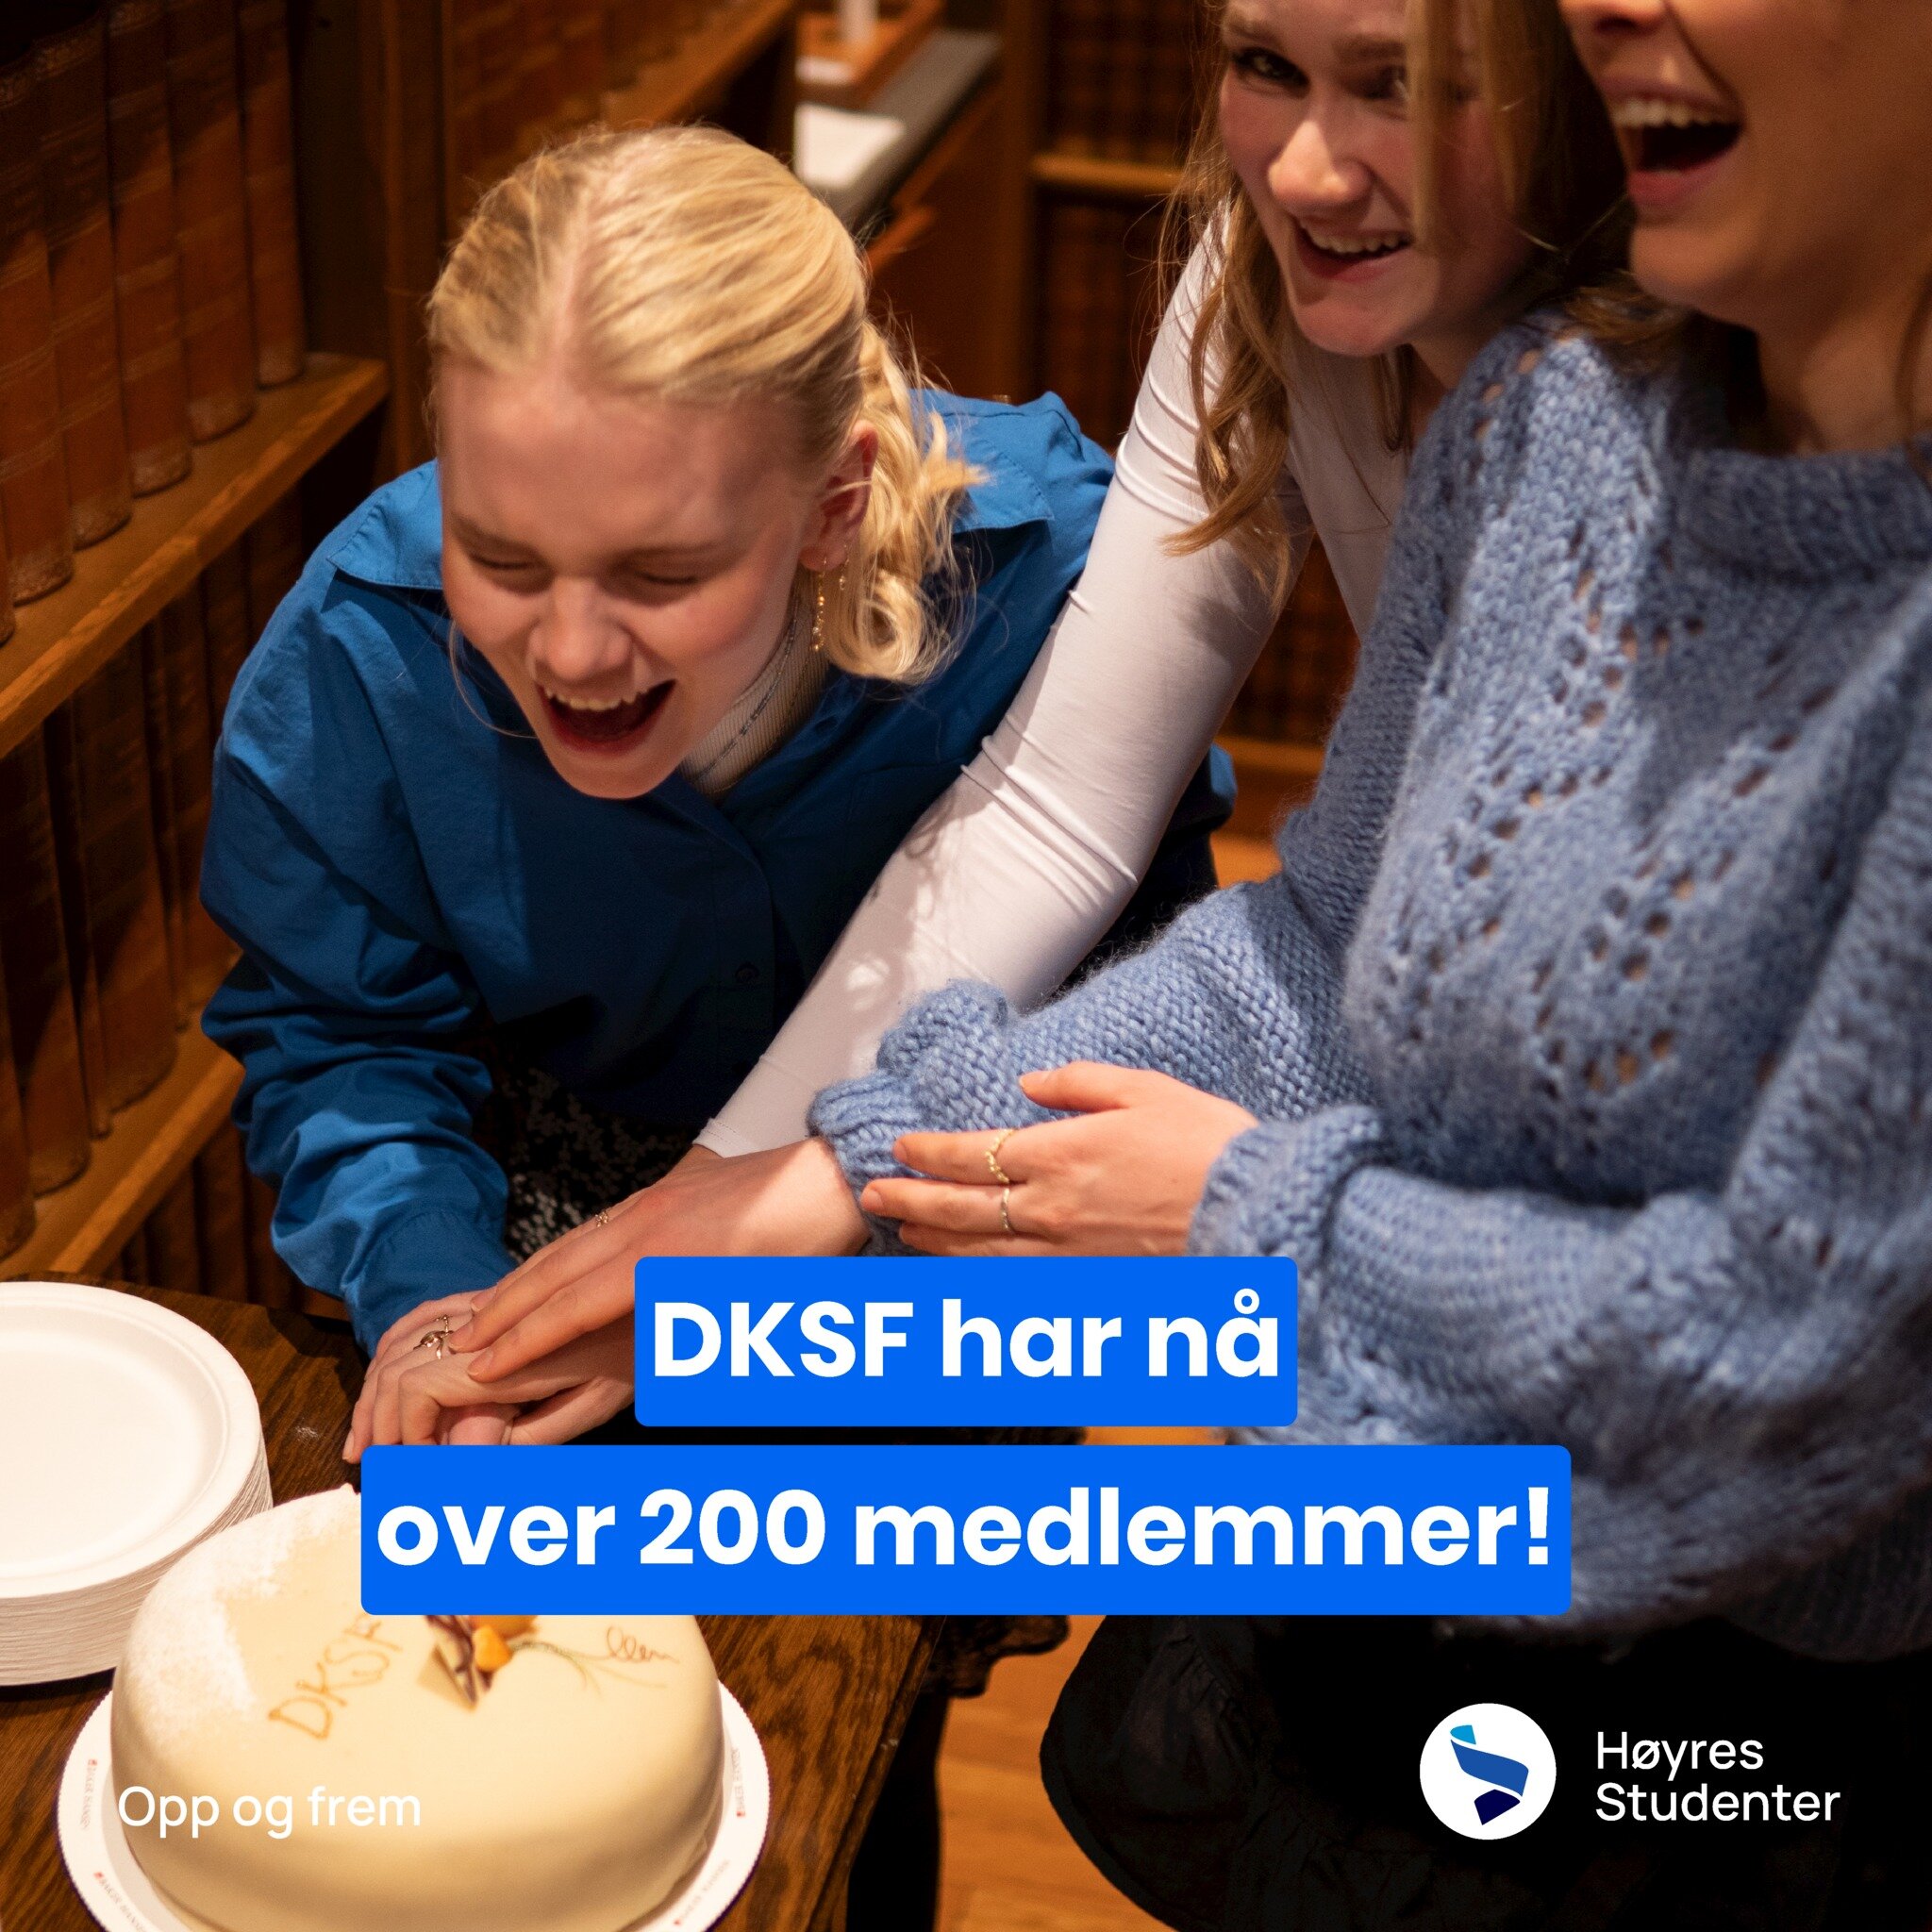 Wohooo! Etter den nasjonale vervedagen har DKSF-familien vokst til over 200 medlemmer 💪 Velkommen til alle nye - vi gleder oss til tiden fremover med dere 💙